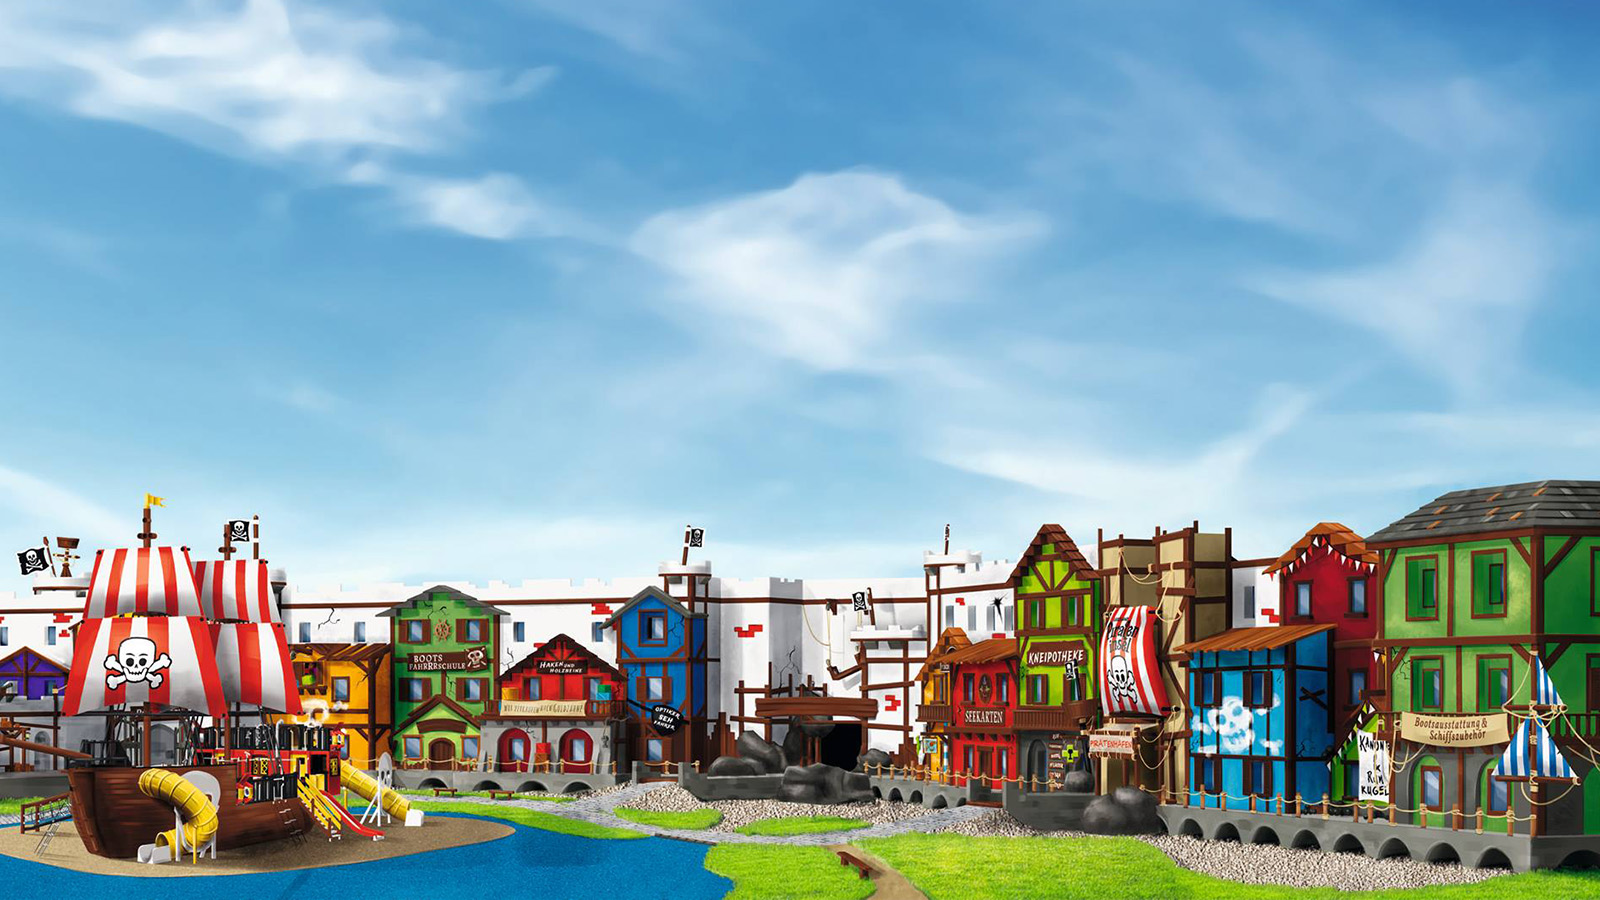 Legoland Piratenhotel design